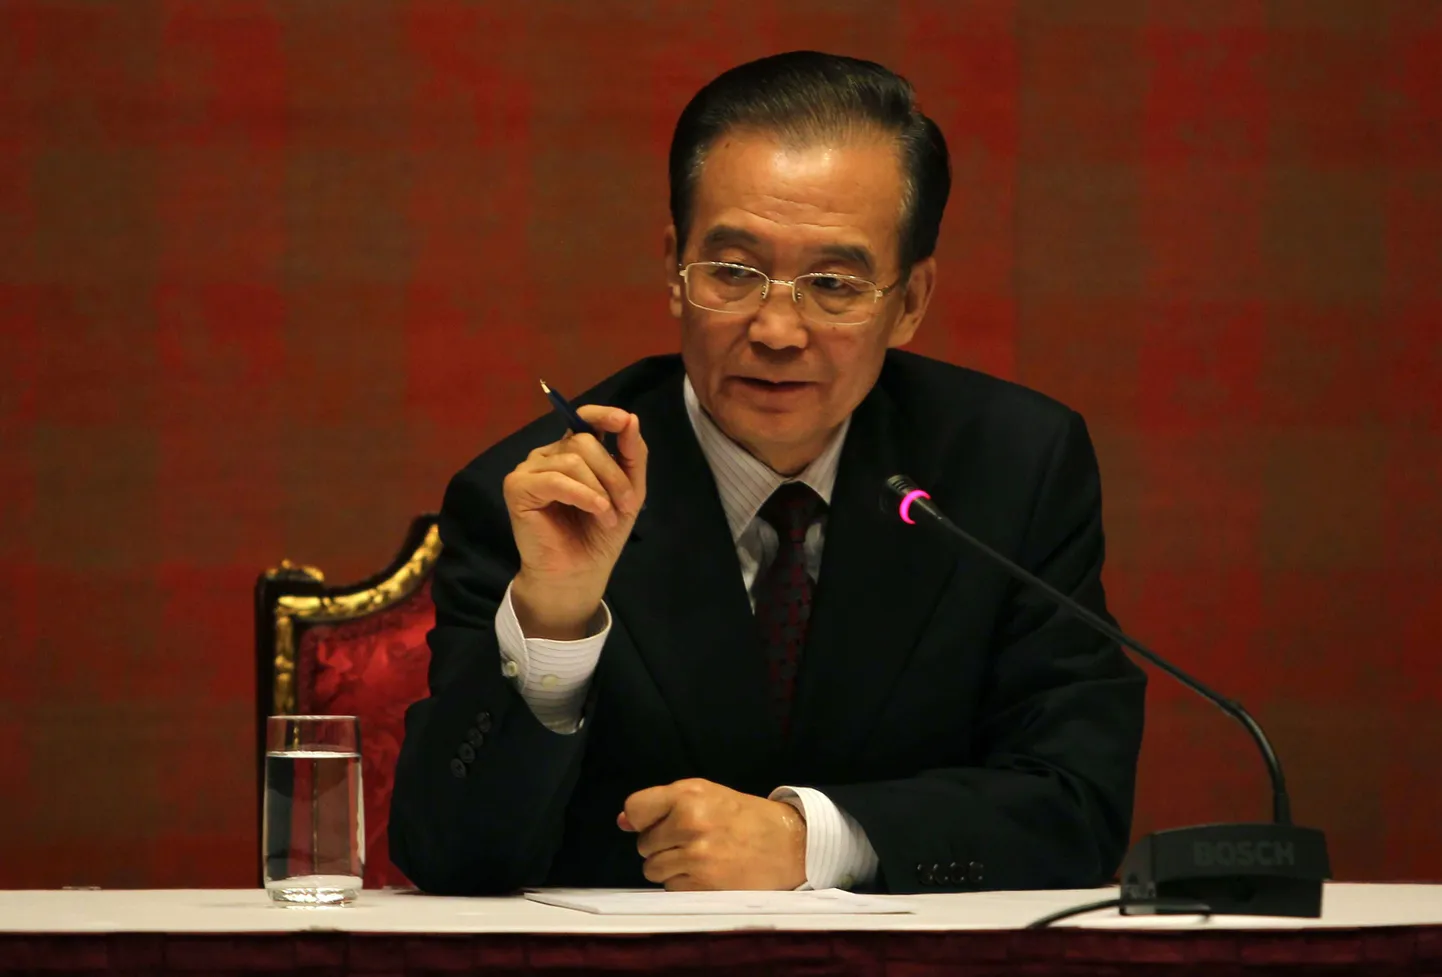 Hiina peaminister Wen Jiabao.